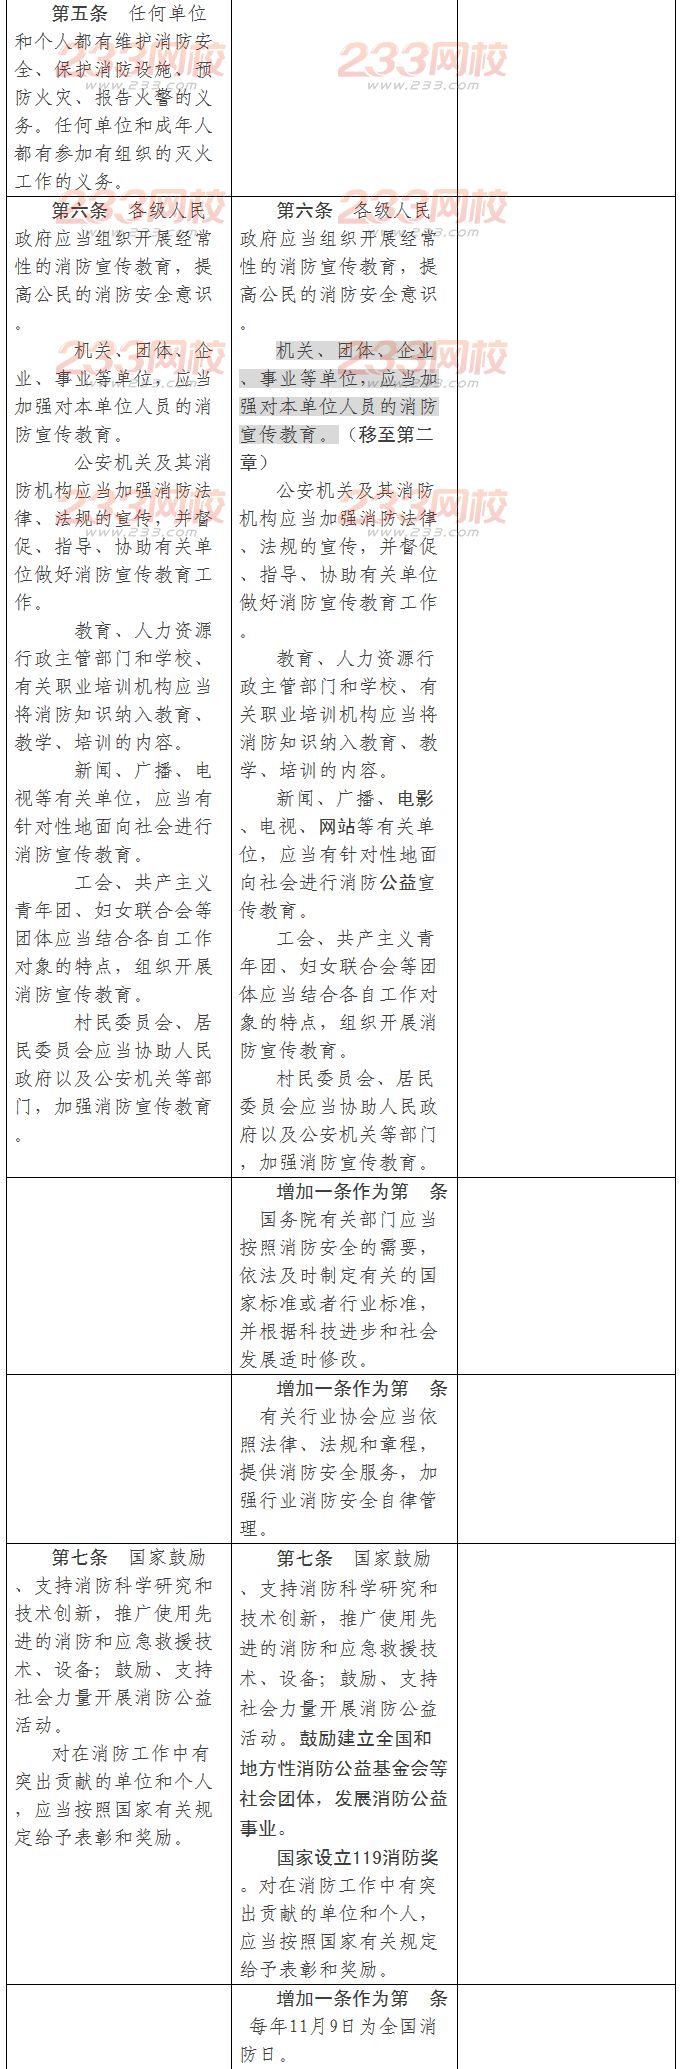 《中华人民共和国消防法》修订征求意见对照表